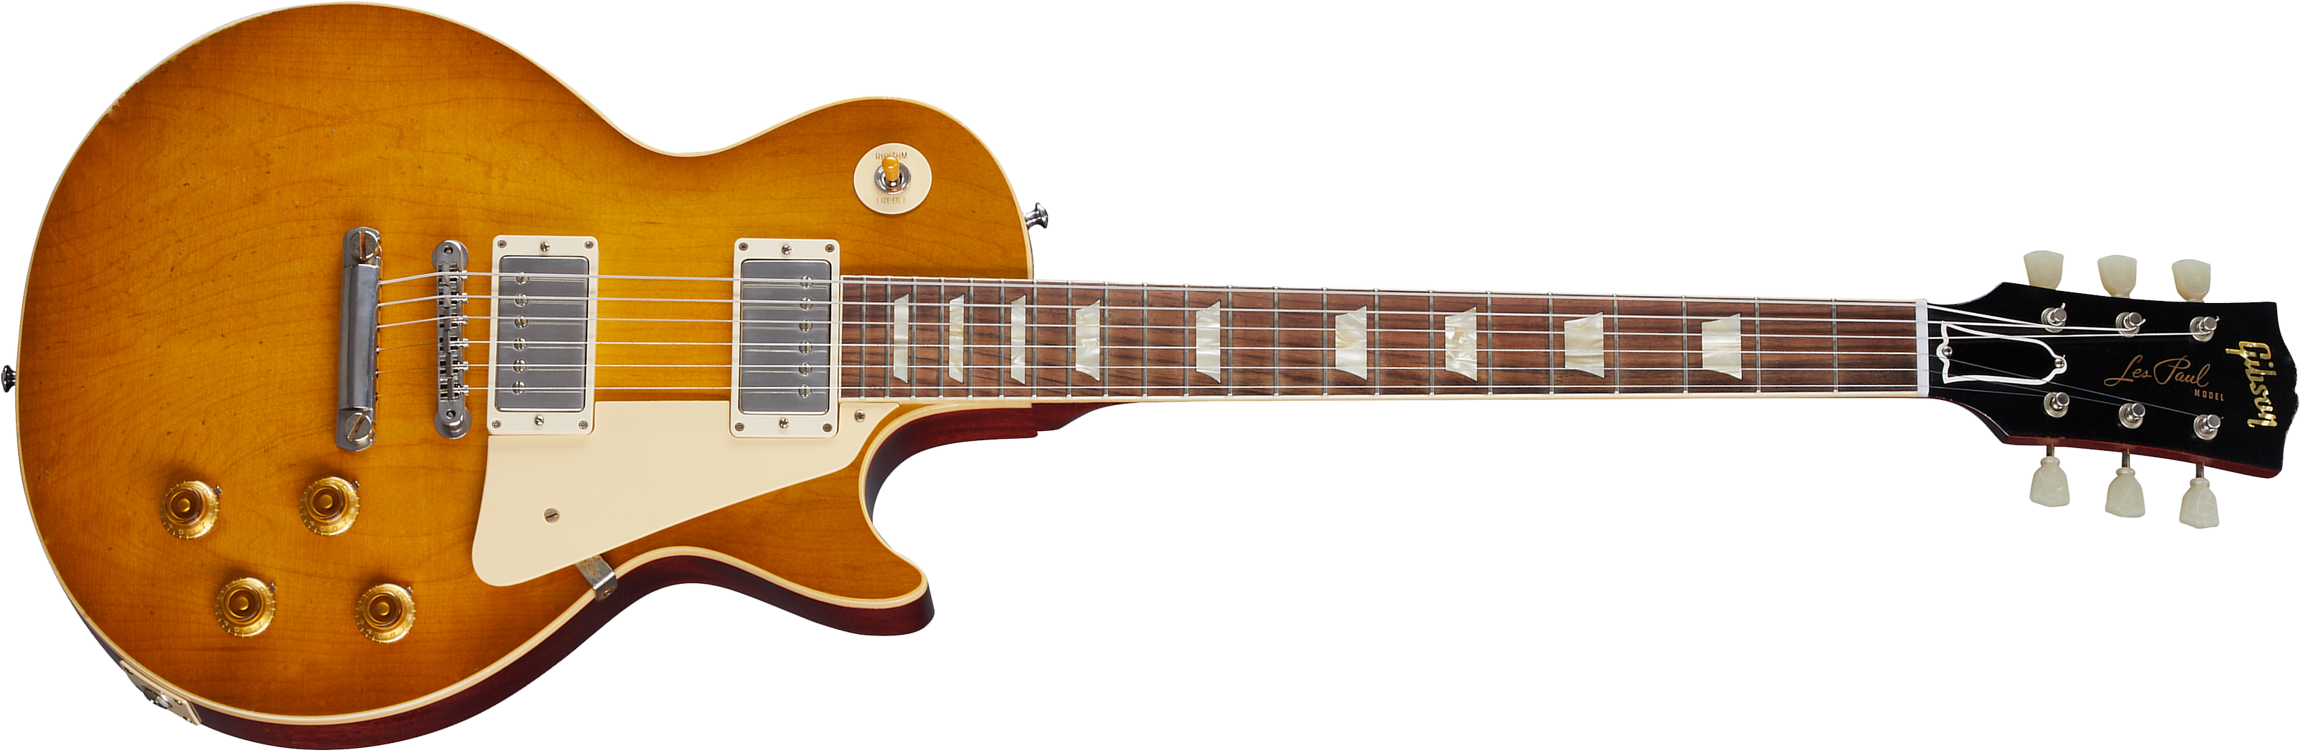 Gibson Custom Shop Murphy Lab Les Paul Standard 1958 Reissue 2h Ht Rw - Light Aged Lemon Burst - Guitarra eléctrica de corte único. - Main picture